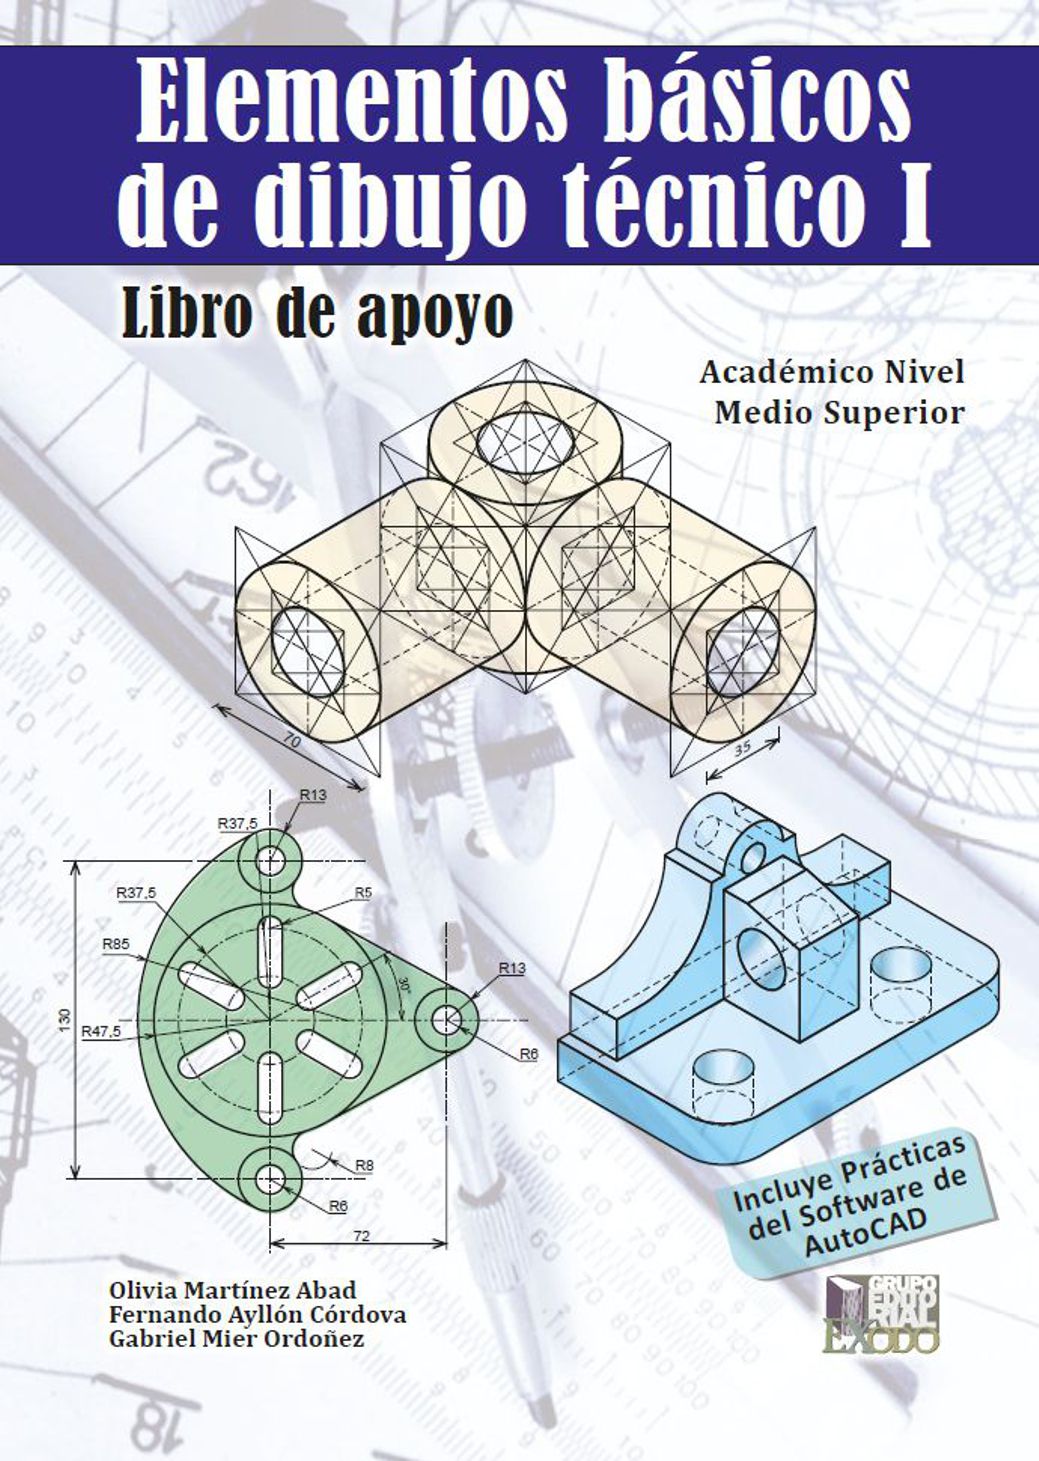 Elementos básicos de dibujo tecnico I. Libro de apoyo. MARTINEZ